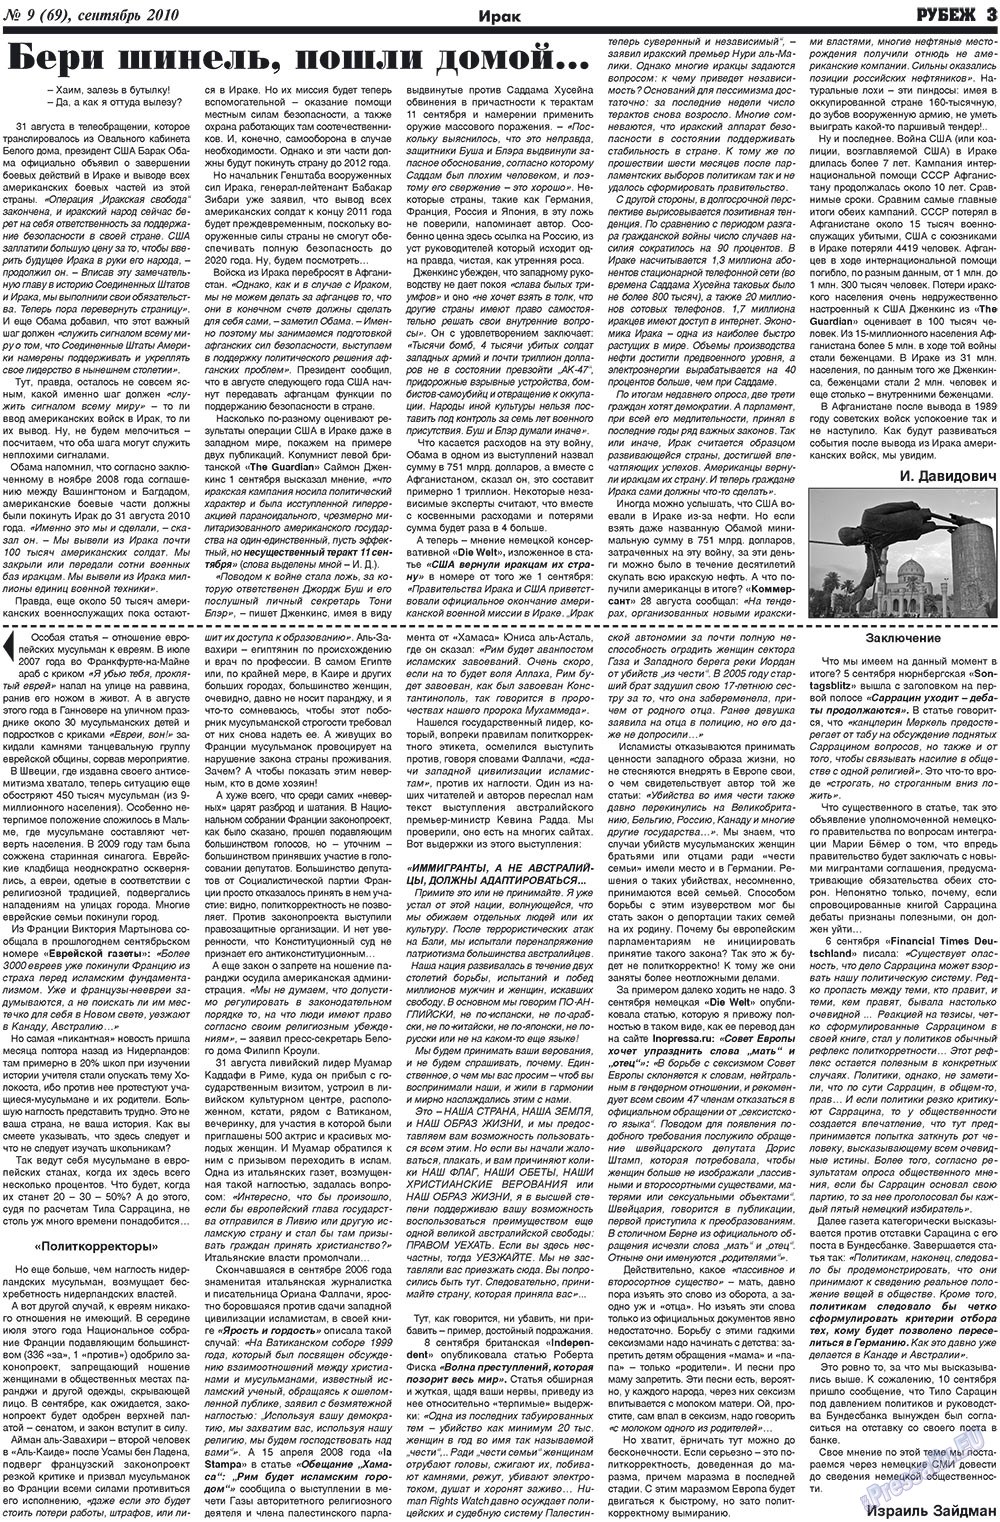 Рубеж (газета). 2010 год, номер 9, стр. 3